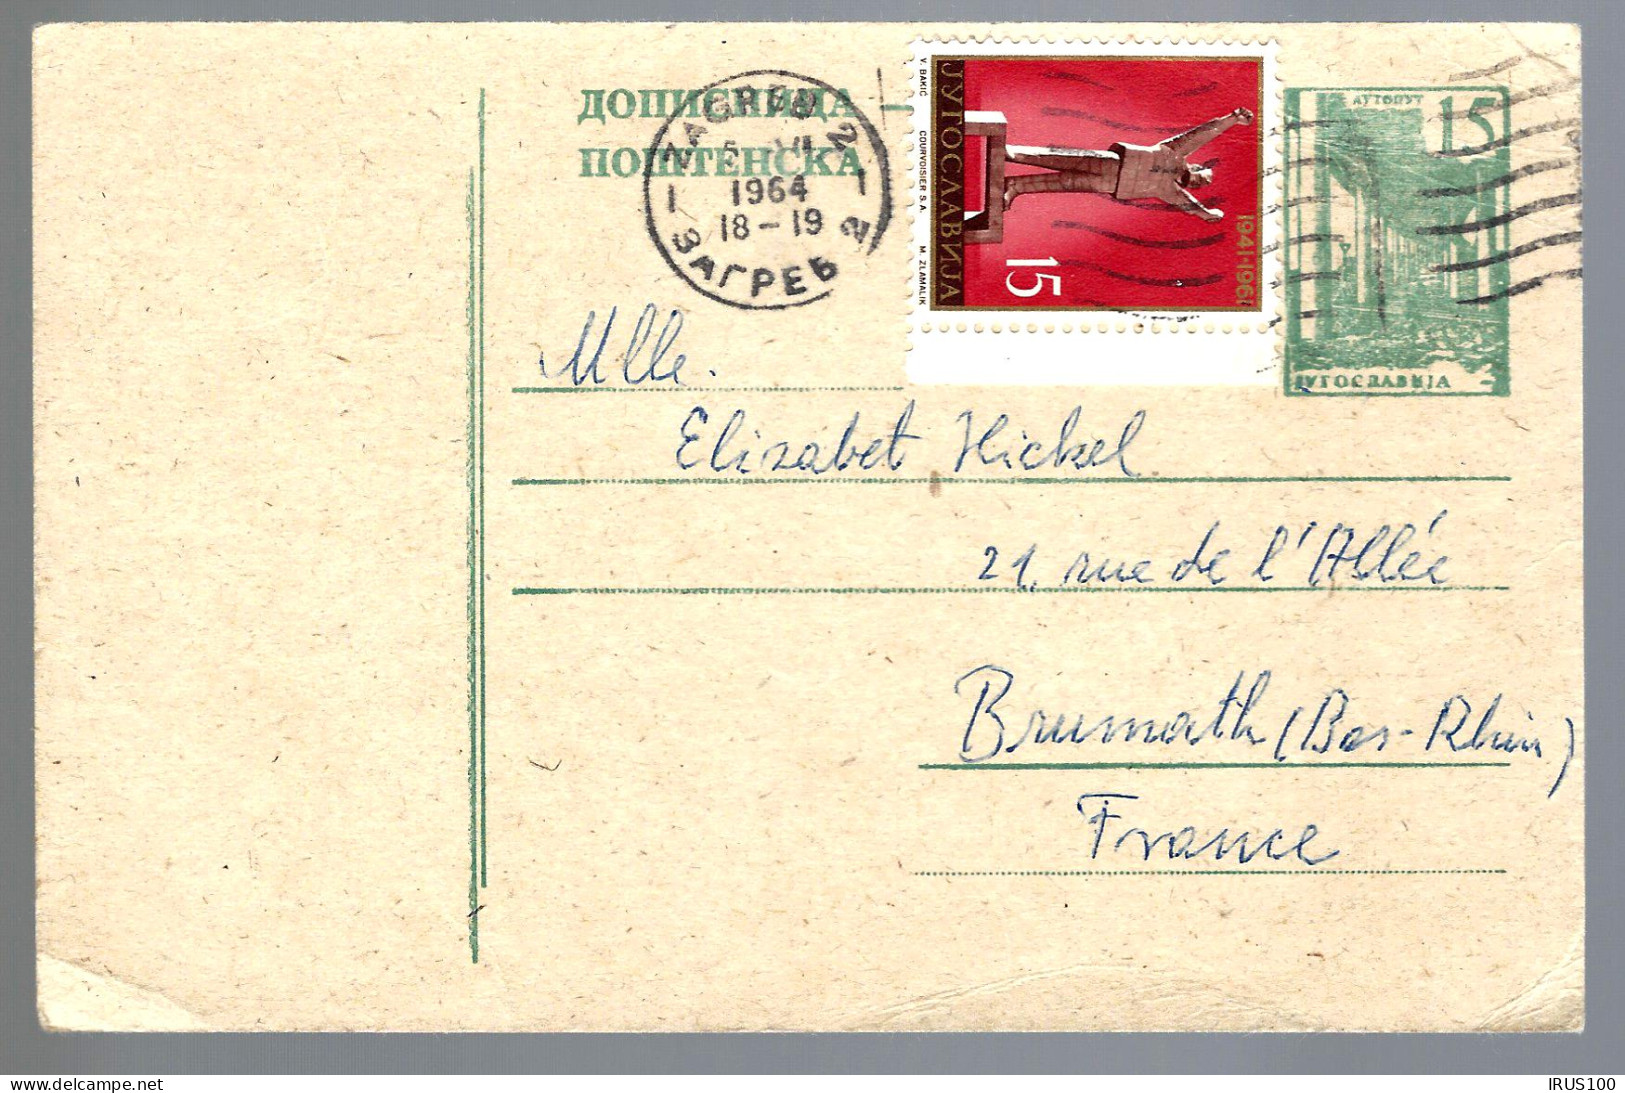 YOUGOSLAVIE - ENTIER POSTAL - 1964 - ZAGREB - GANZSACHE - Postal Stationery